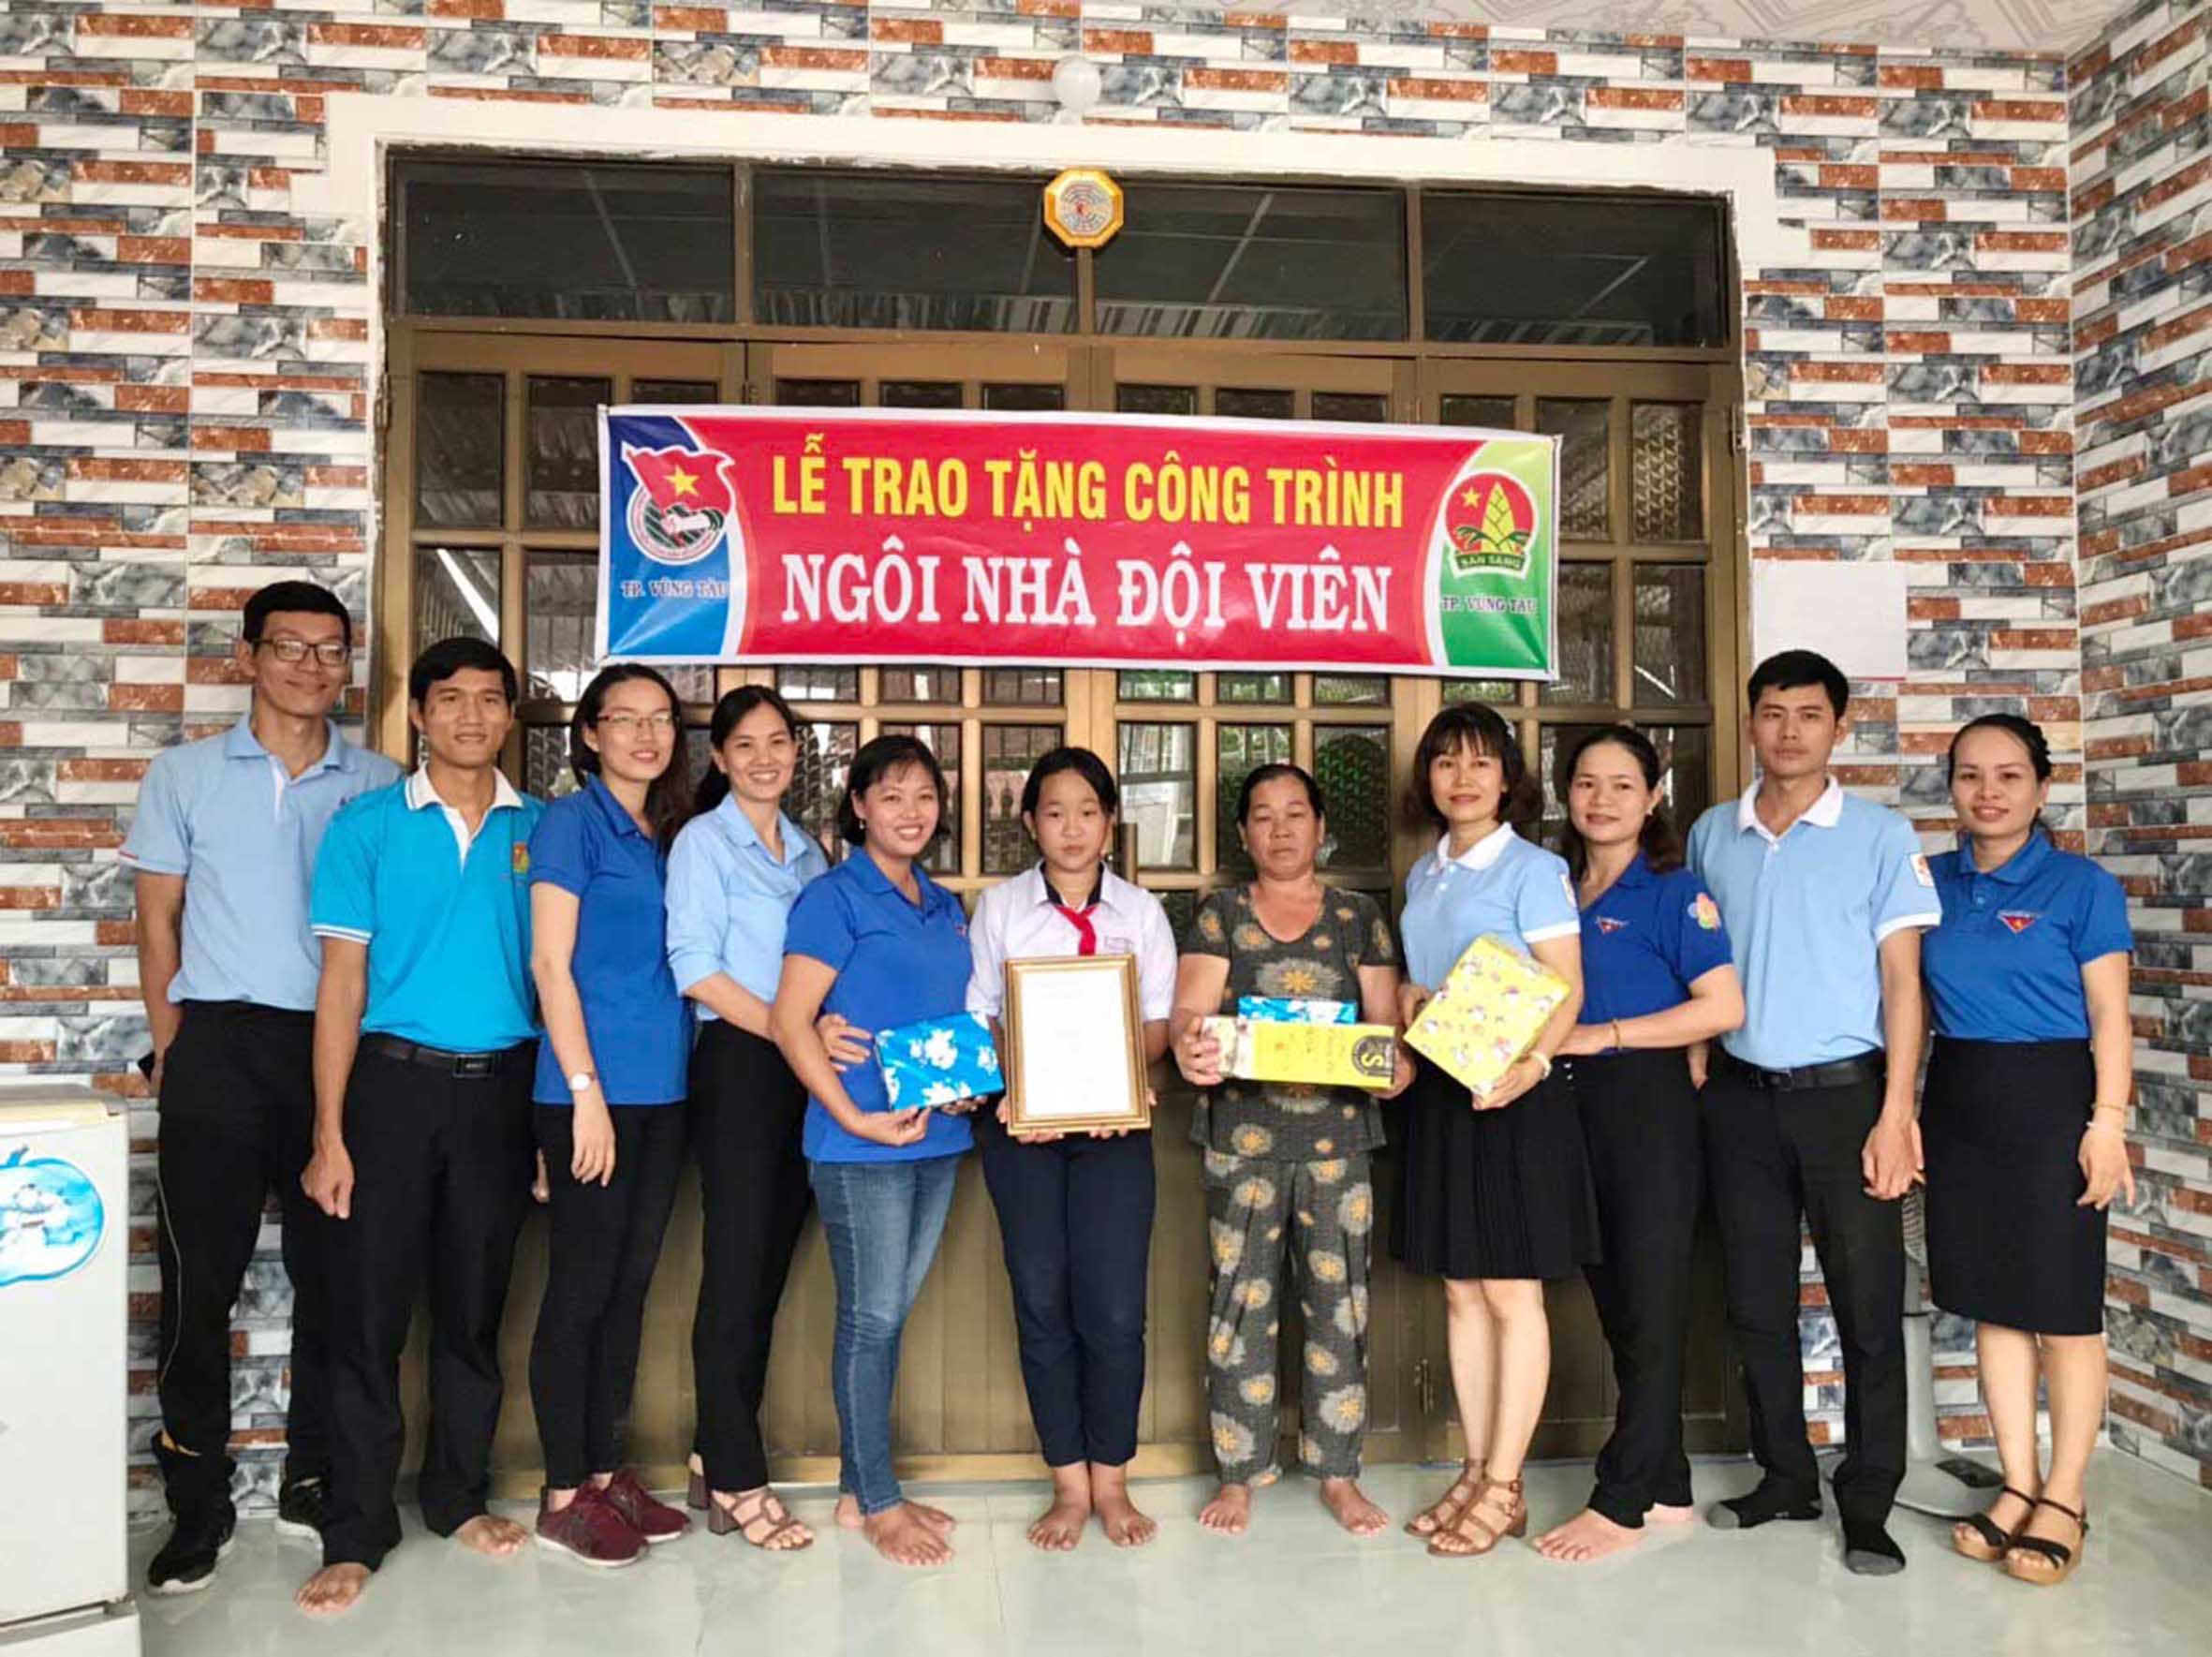 Đại diện Hội đồng Đội TP.Vũng Tàu trao tặng Ngôi nhà đội viên cho em Anh Thư, xã Long Sơn.